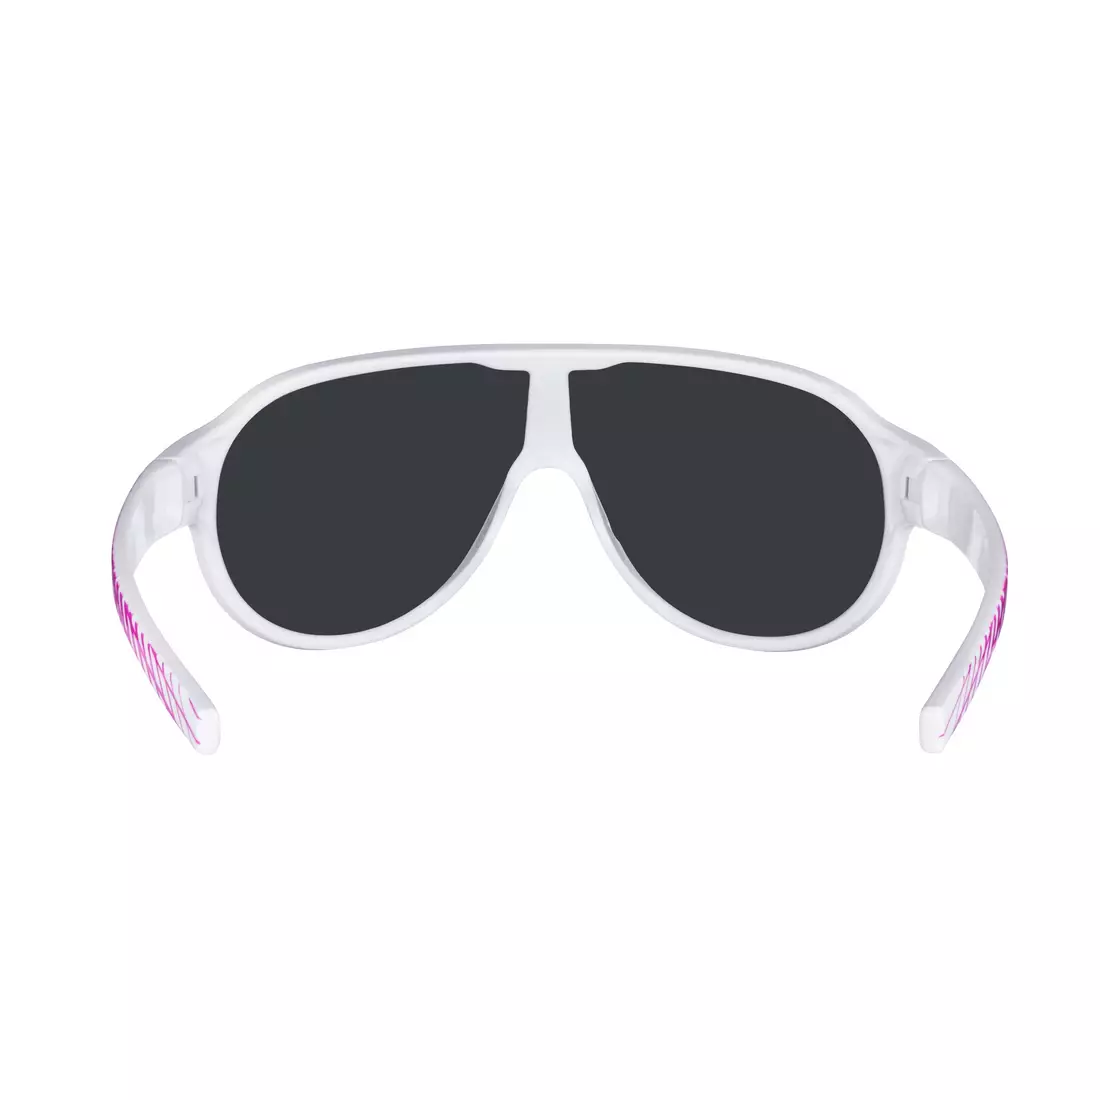 FORCE dámske / mládežnícke okuliare, slnečné okuliare ROSIE, biele a ružové, čierne sklá 90965